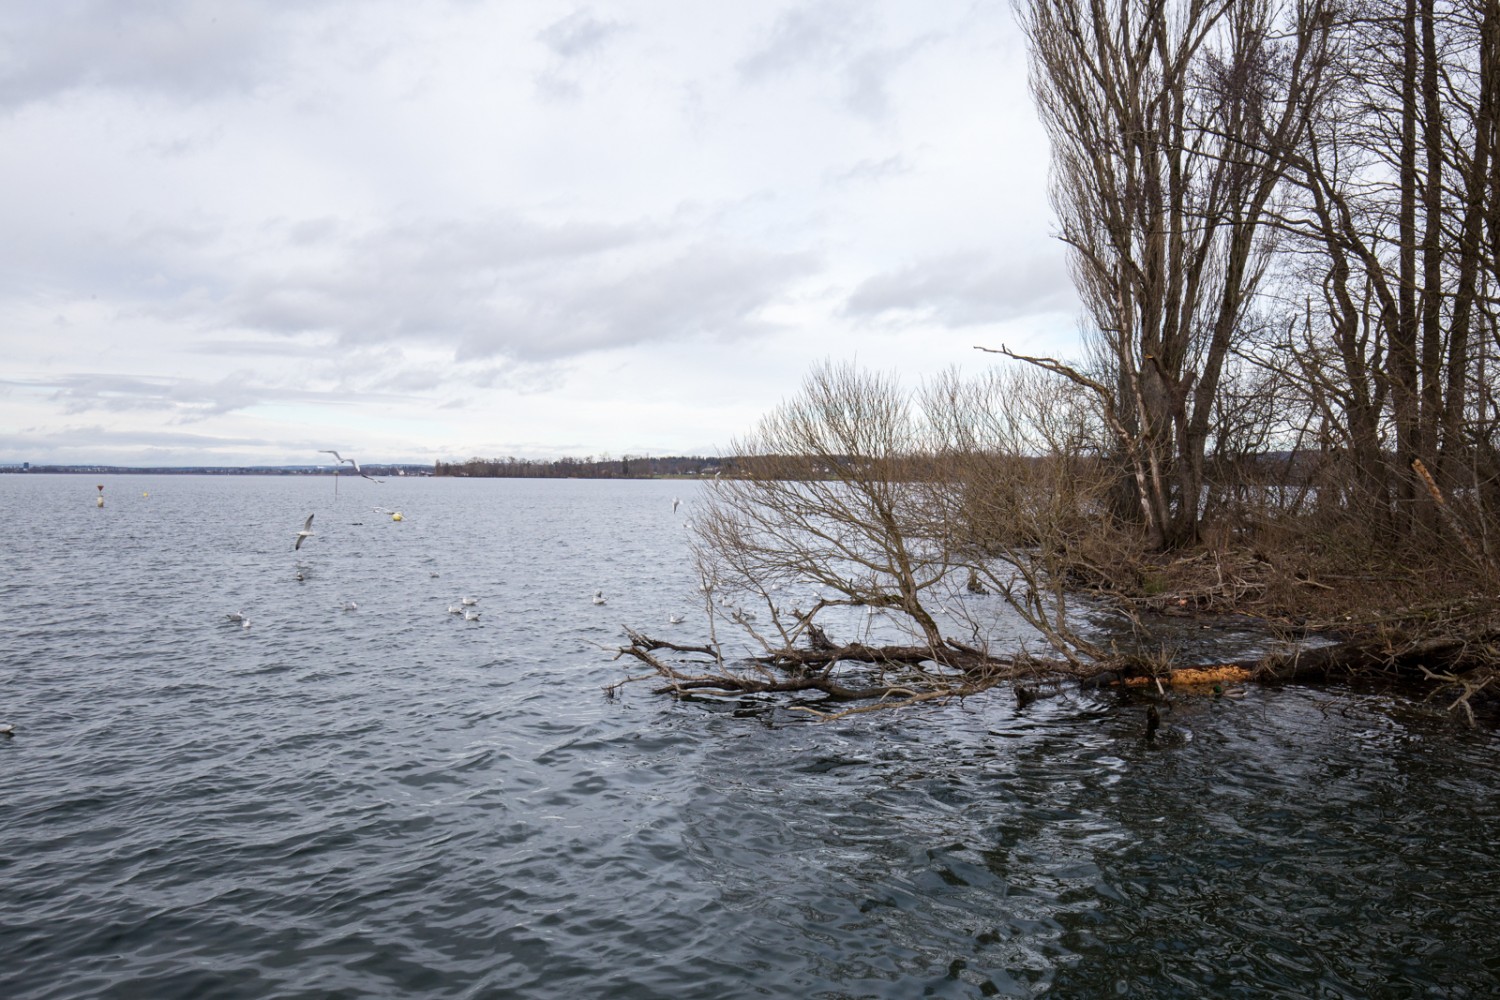 Beaucoup de canards peuvent être observés sur l’eau à Aaspitz. Photo: Daniel Fleuti